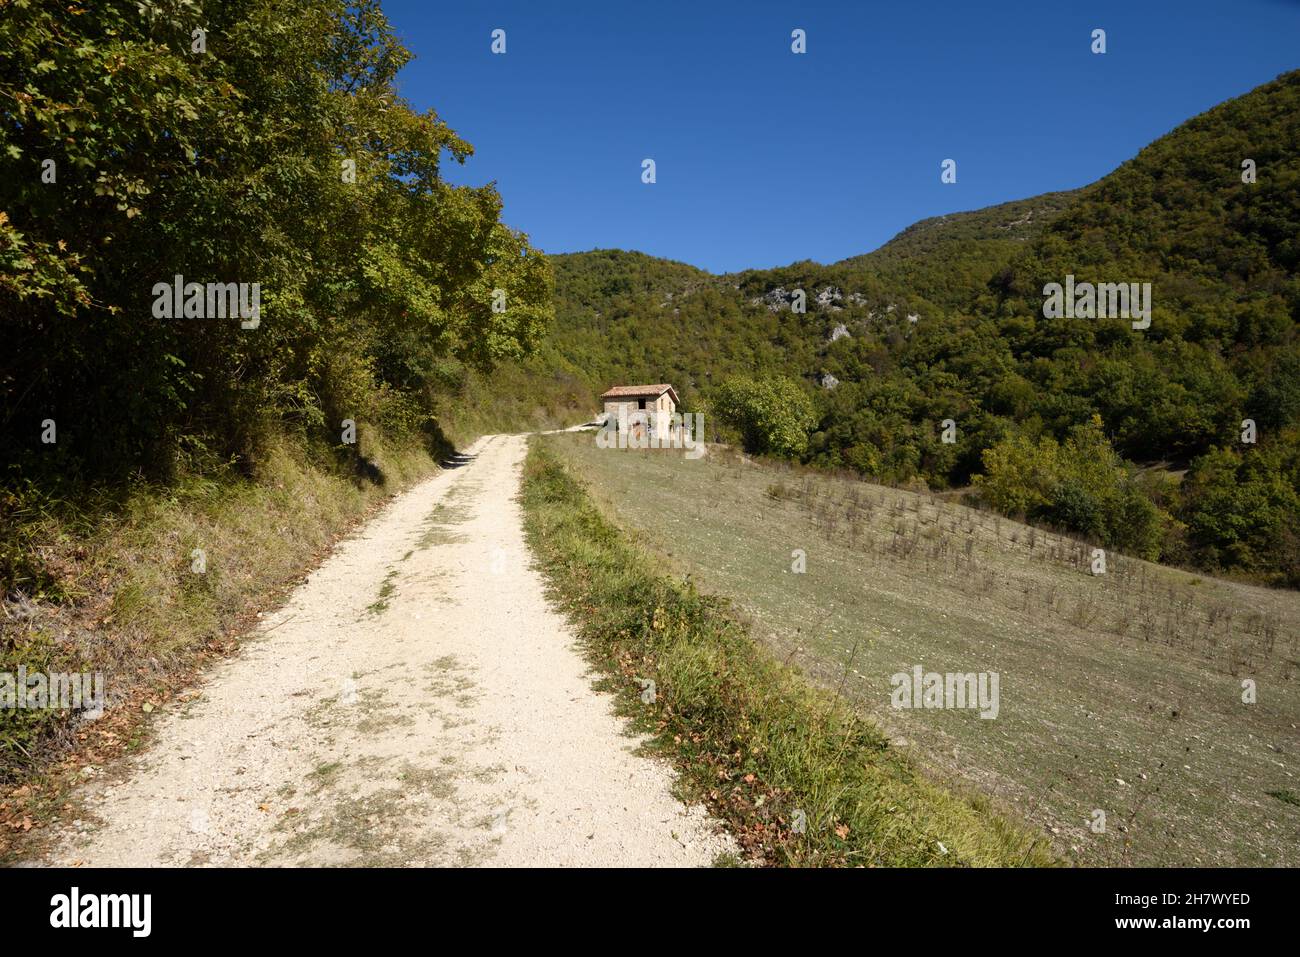 italy, lazio, castel di tora, countryside path Stock Photo